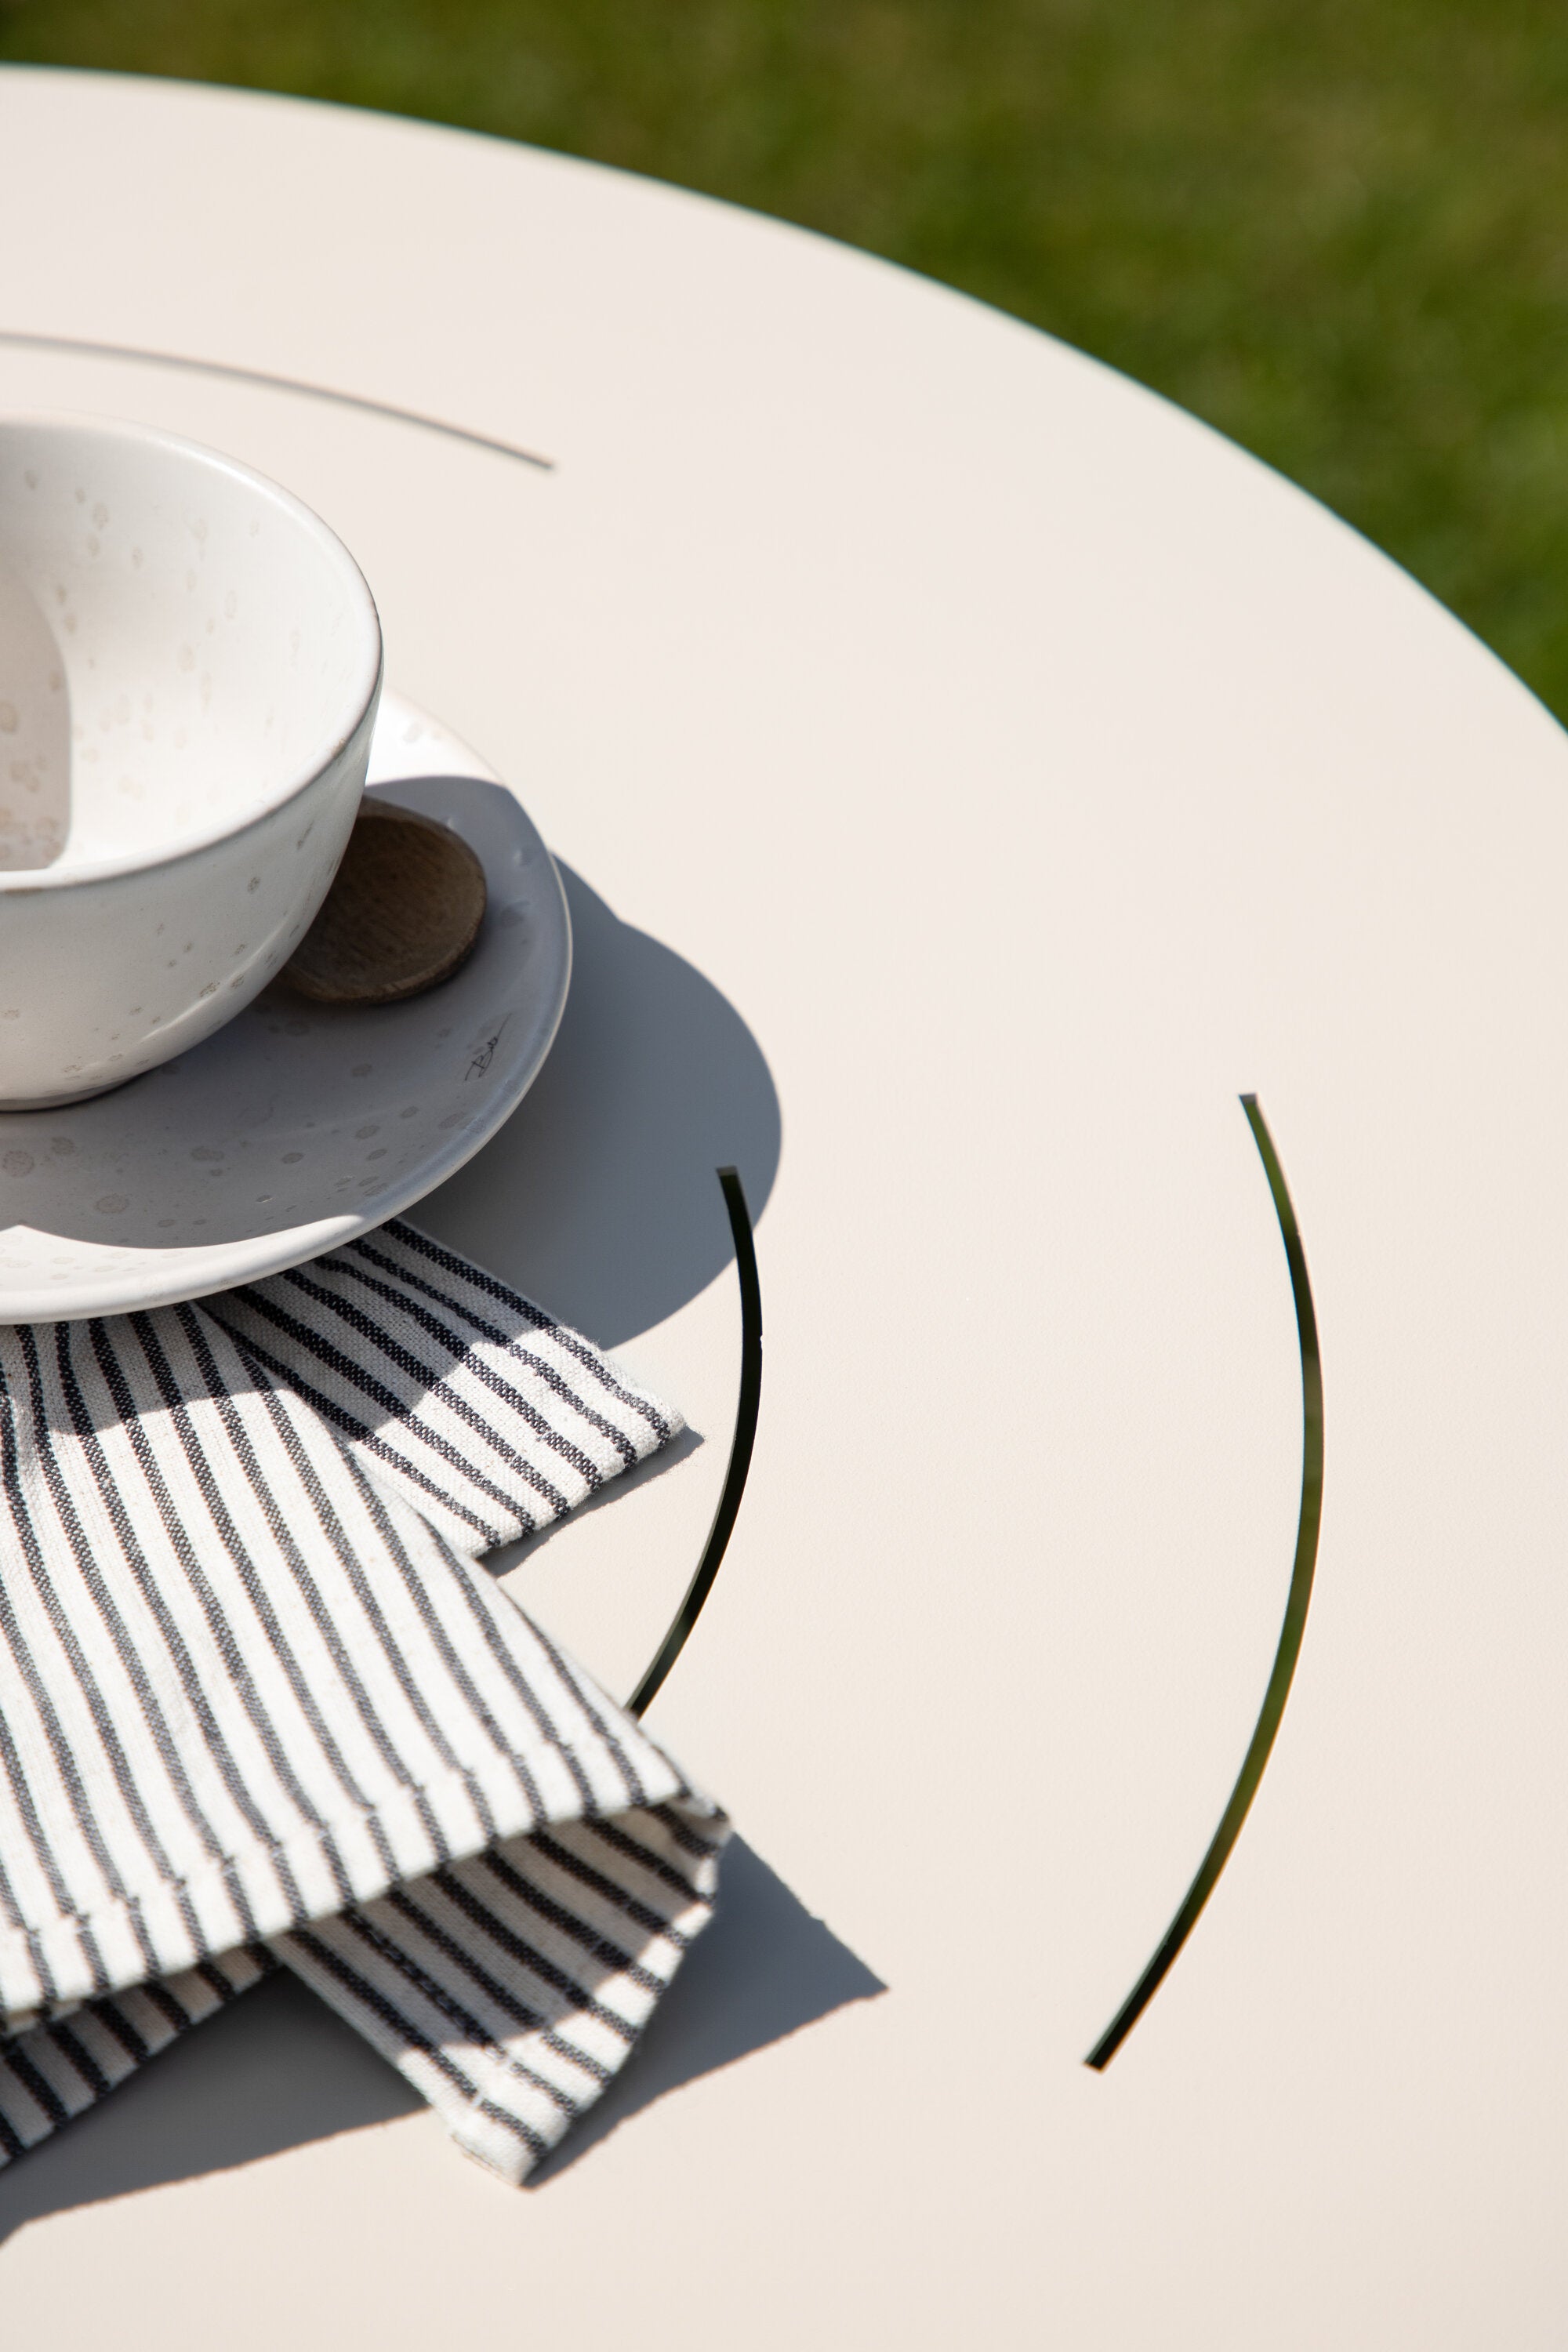 Bacong Coffee Tisch - KAQTU Design